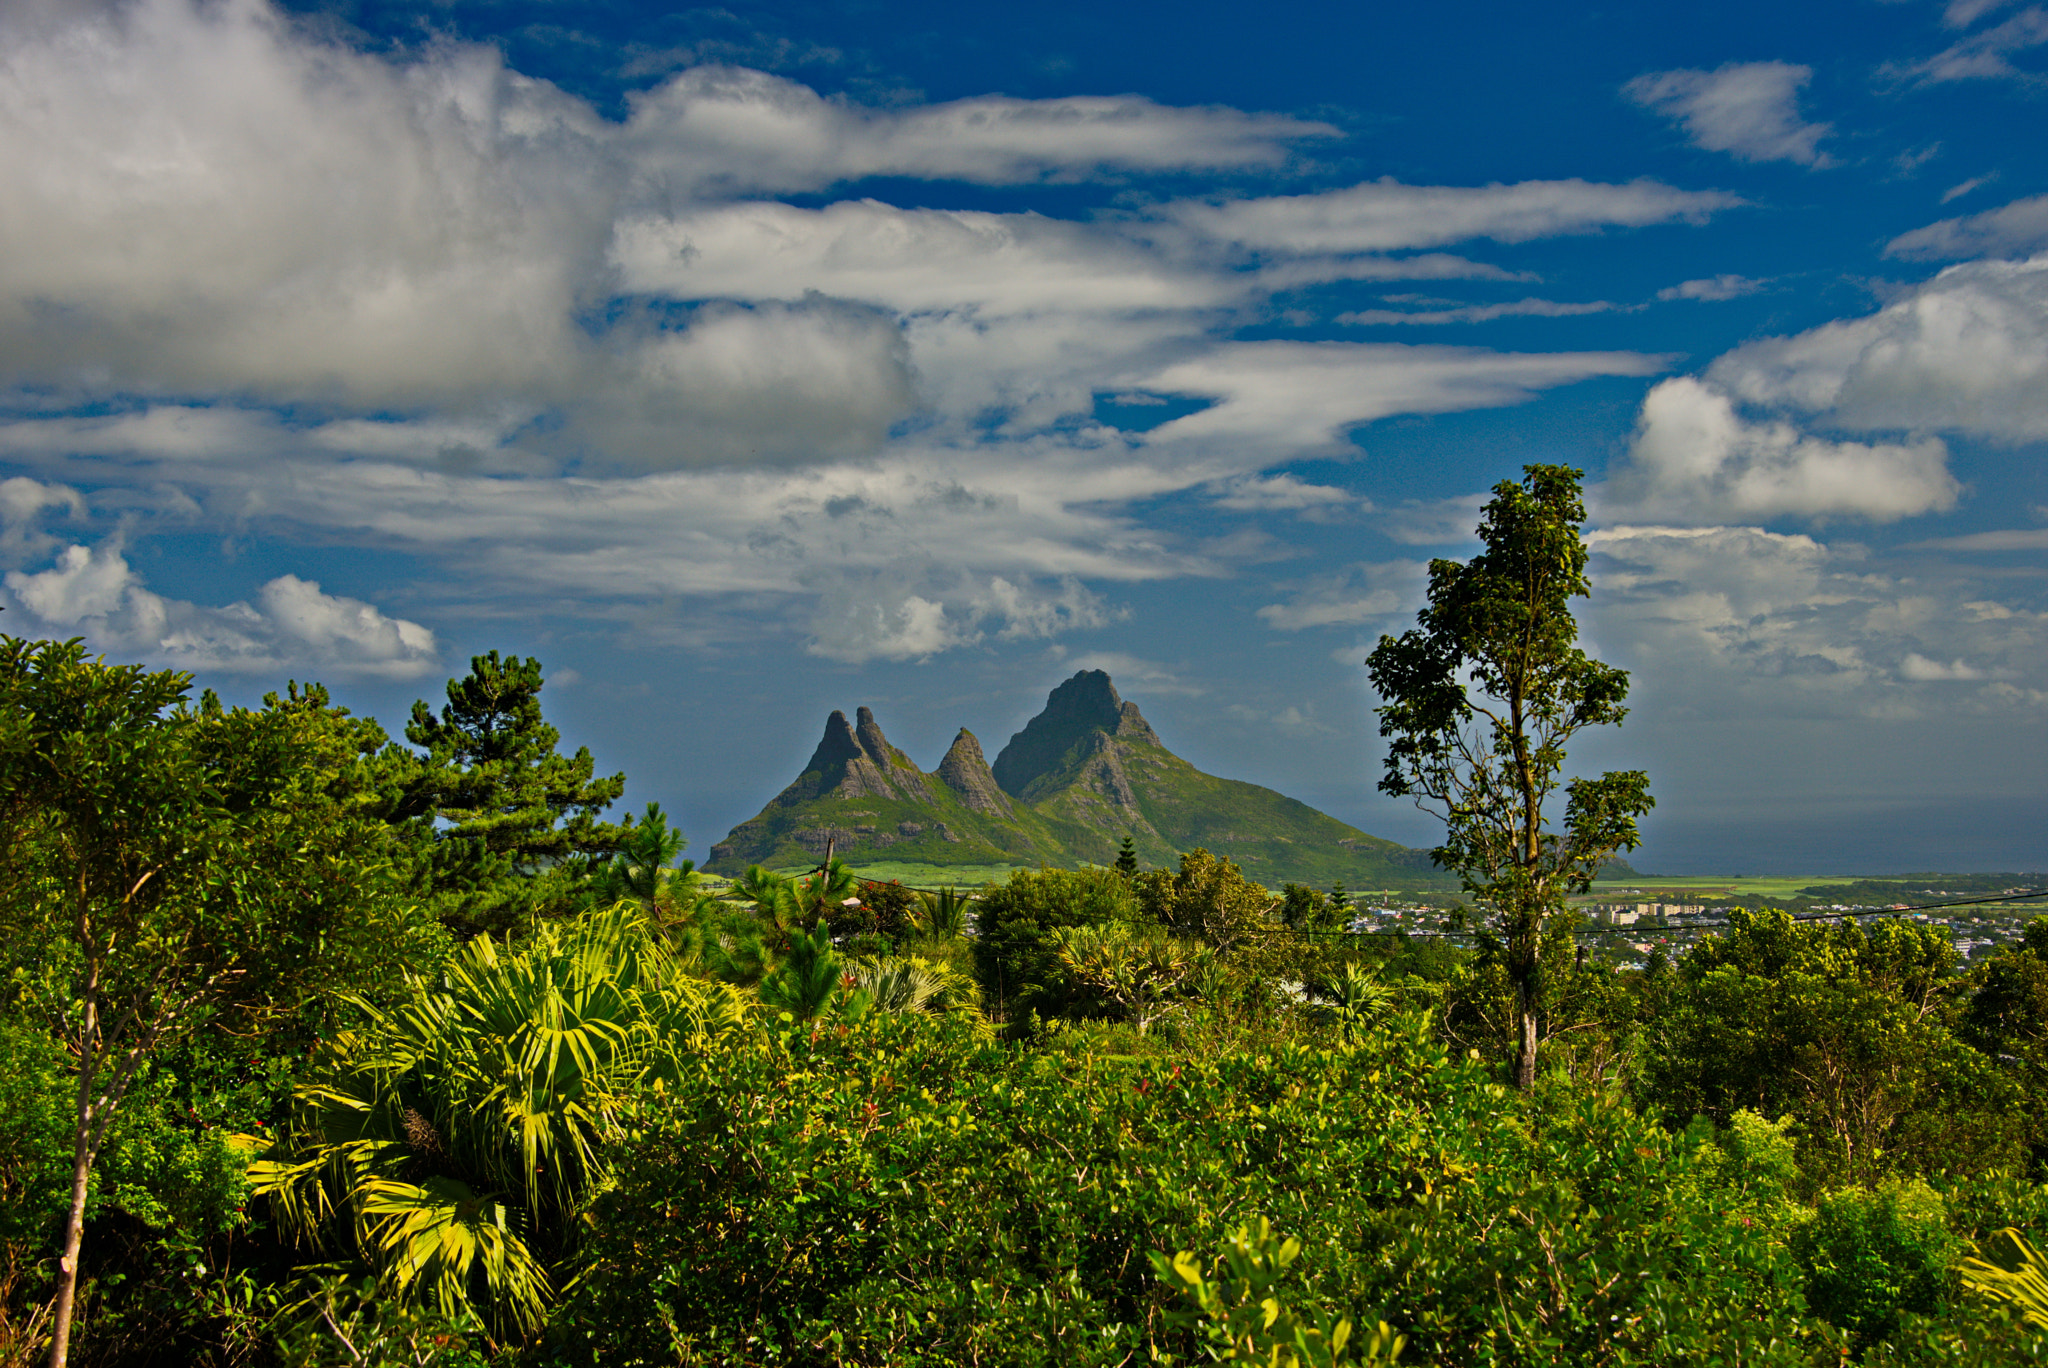 Nikon D800 + Nikon AF-S Nikkor 28-300mm F3.5-5.6G ED VR sample photo. Mauritius landscapes photography